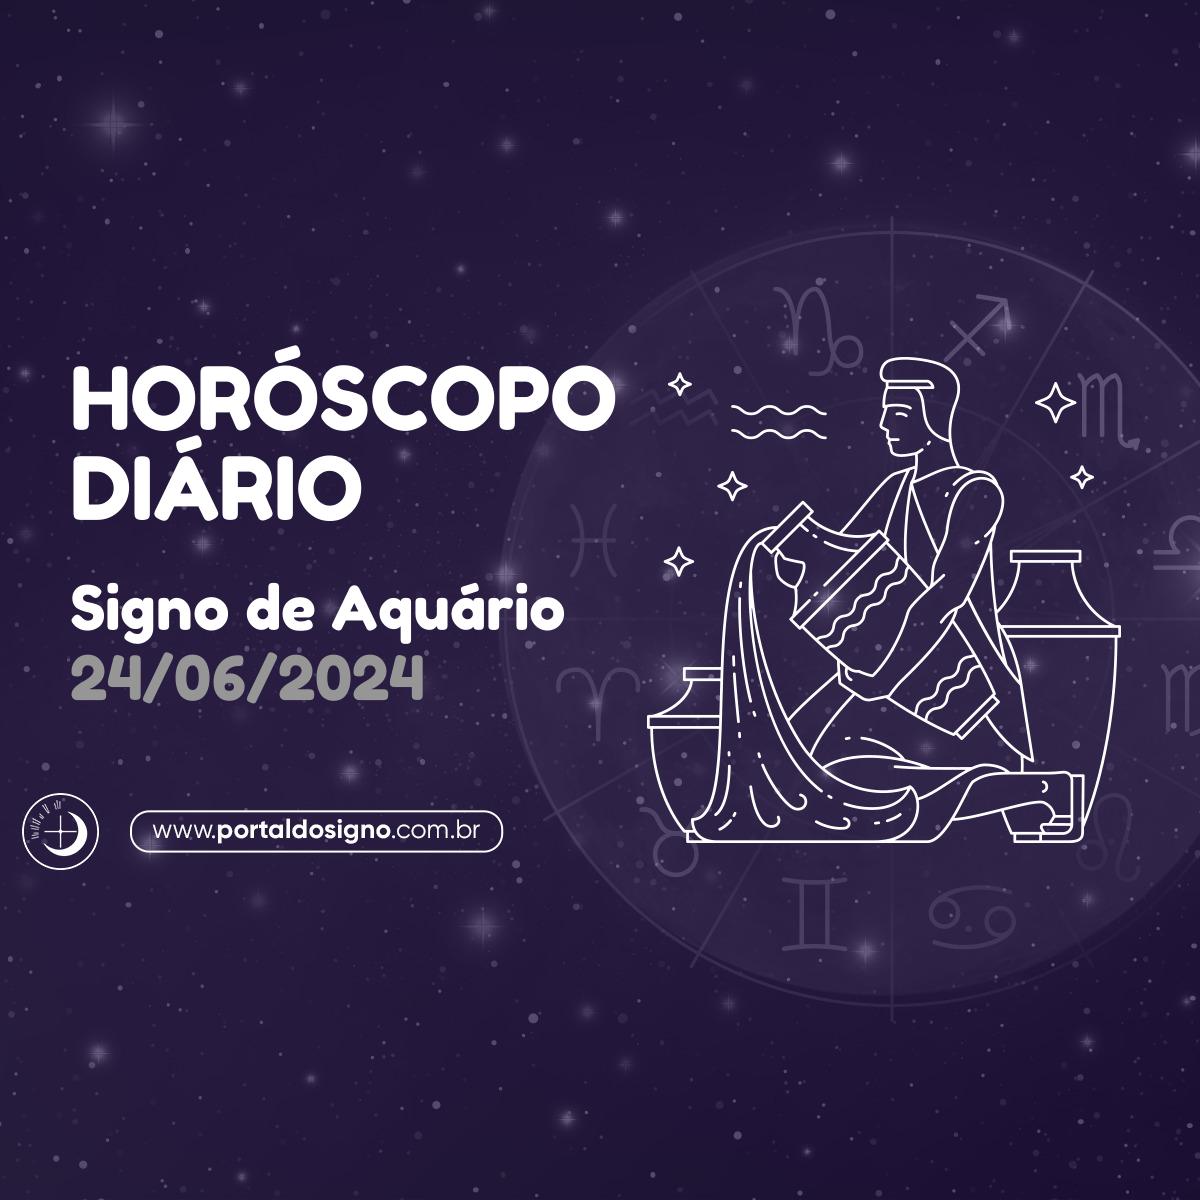 Horóscopo diário para Aquário em 24/06/2024